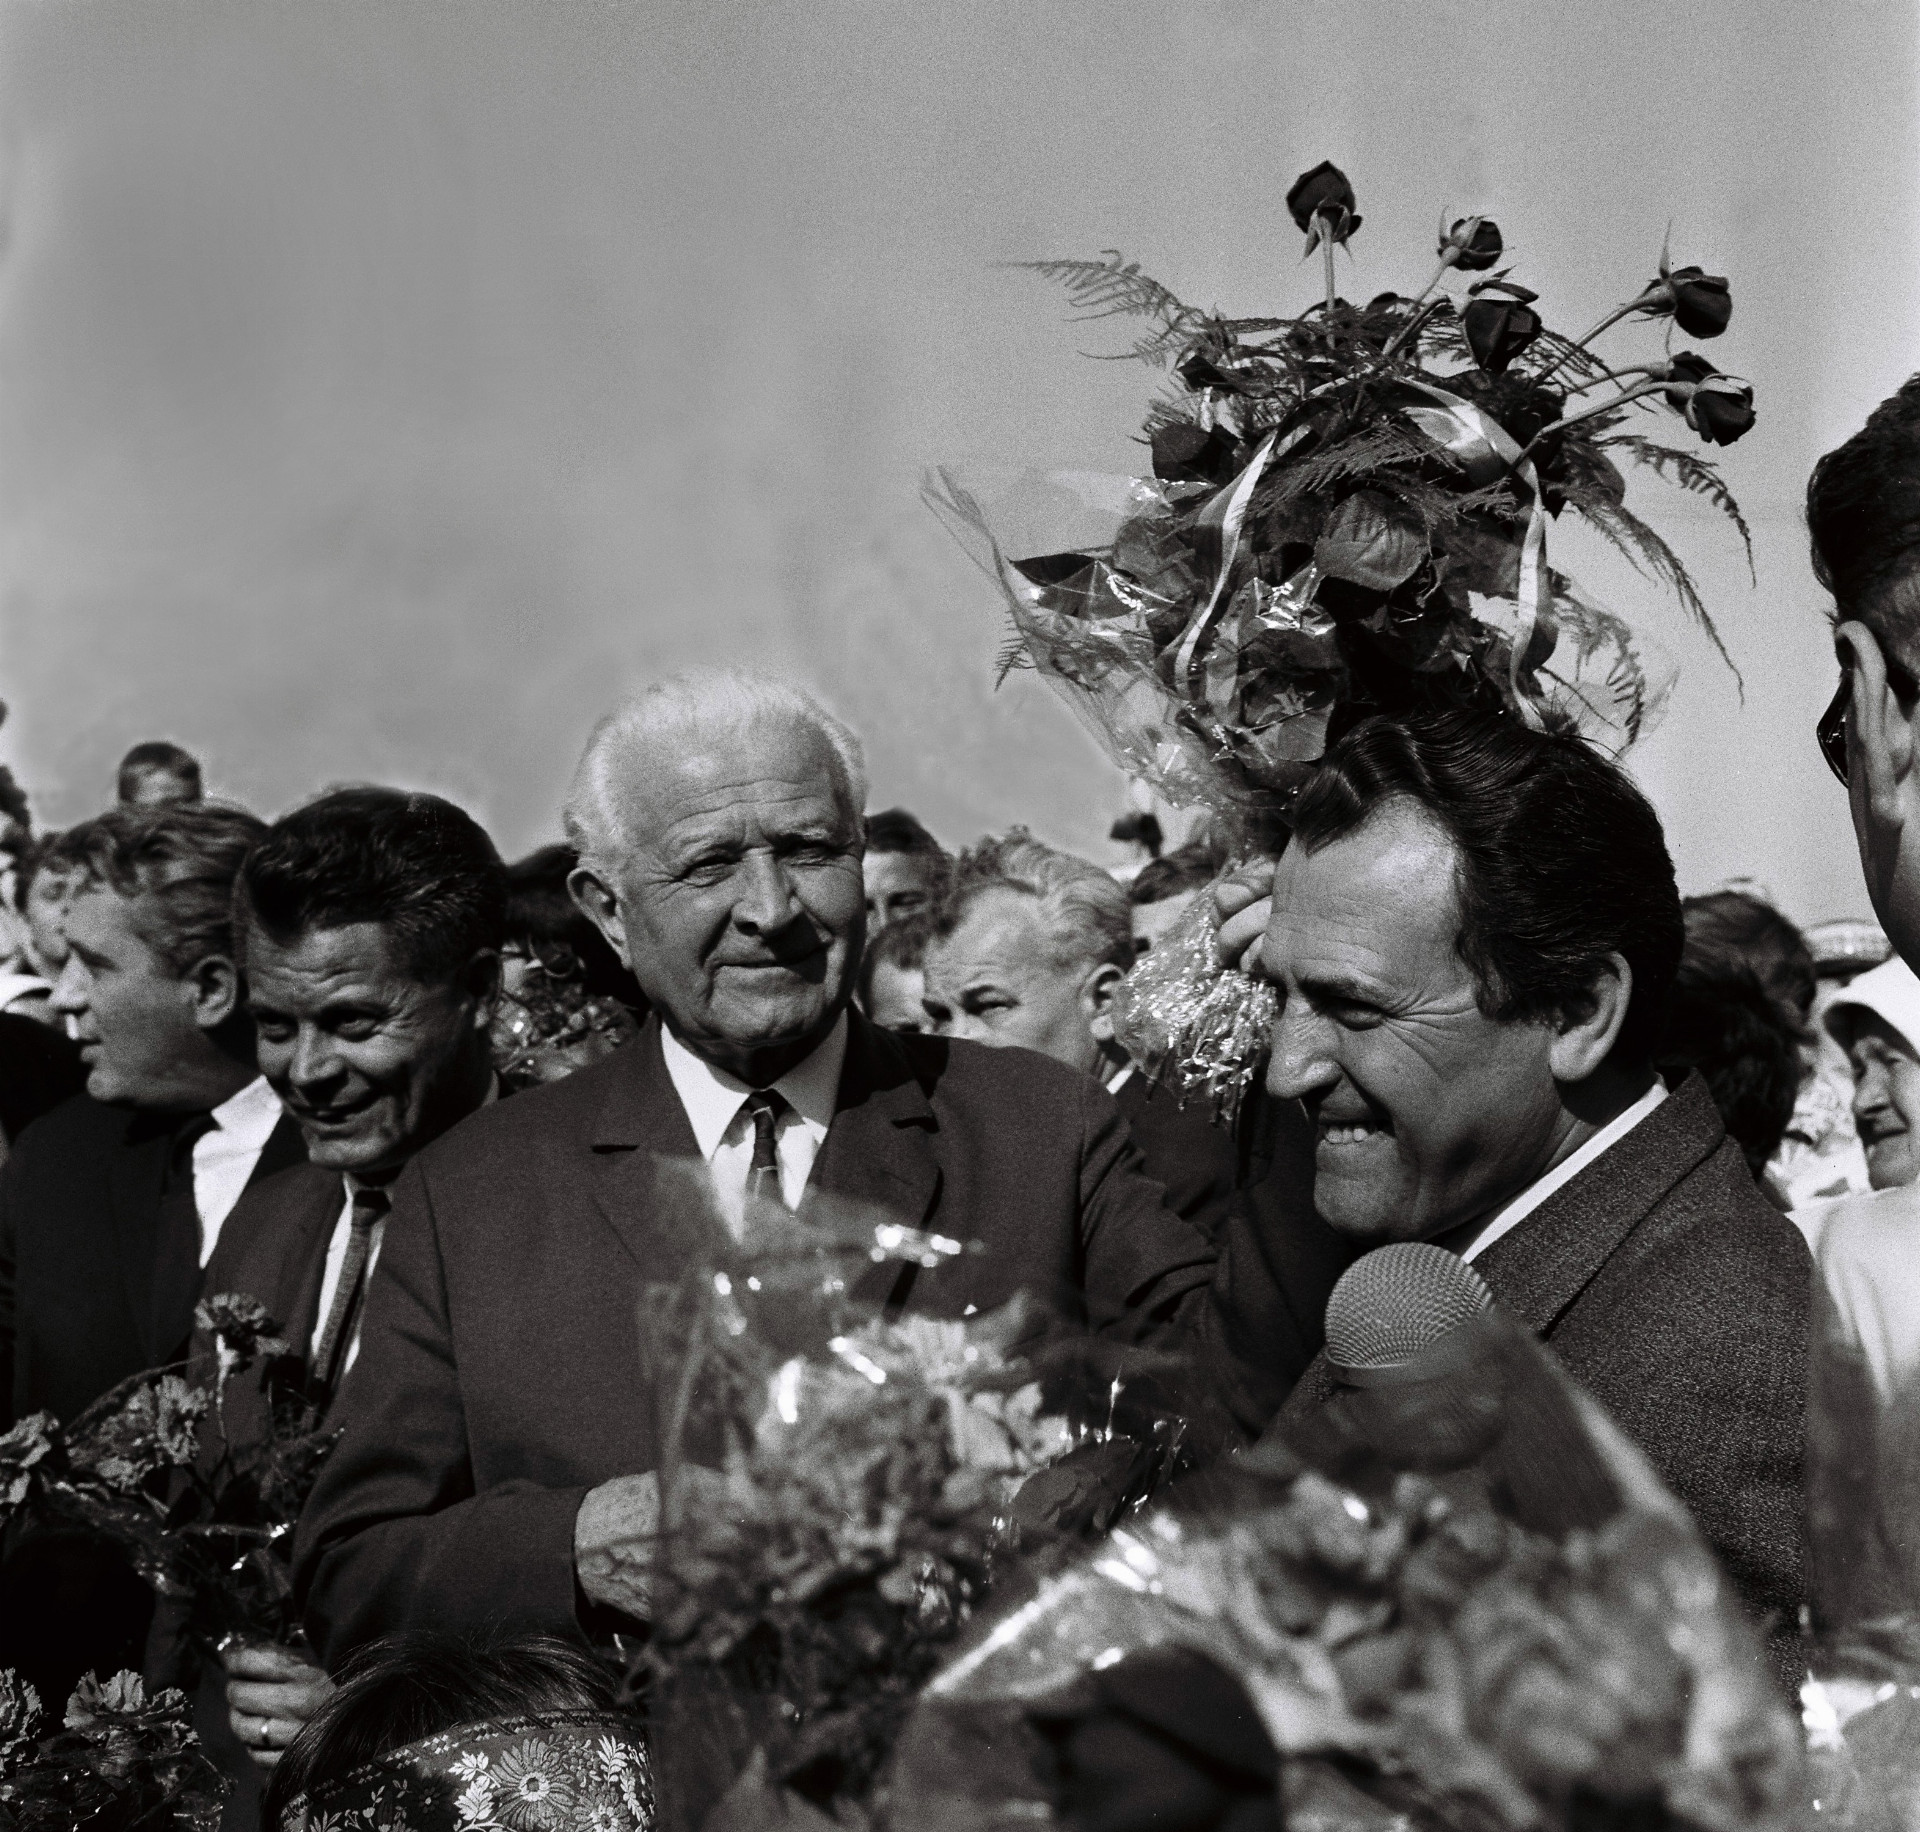 Na archívnej snímke z 23. apríla 1968 deti družstevníkov privítali vzácnych hostí kyticami čerstvých kvetov. Uprostred prezident republiky Ludvík Svoboda, vpravo prvý tajomník ÚV KSS Vasil Biľak a druhý zľava tajomník ÚV KSS Ján Janík. Snímka